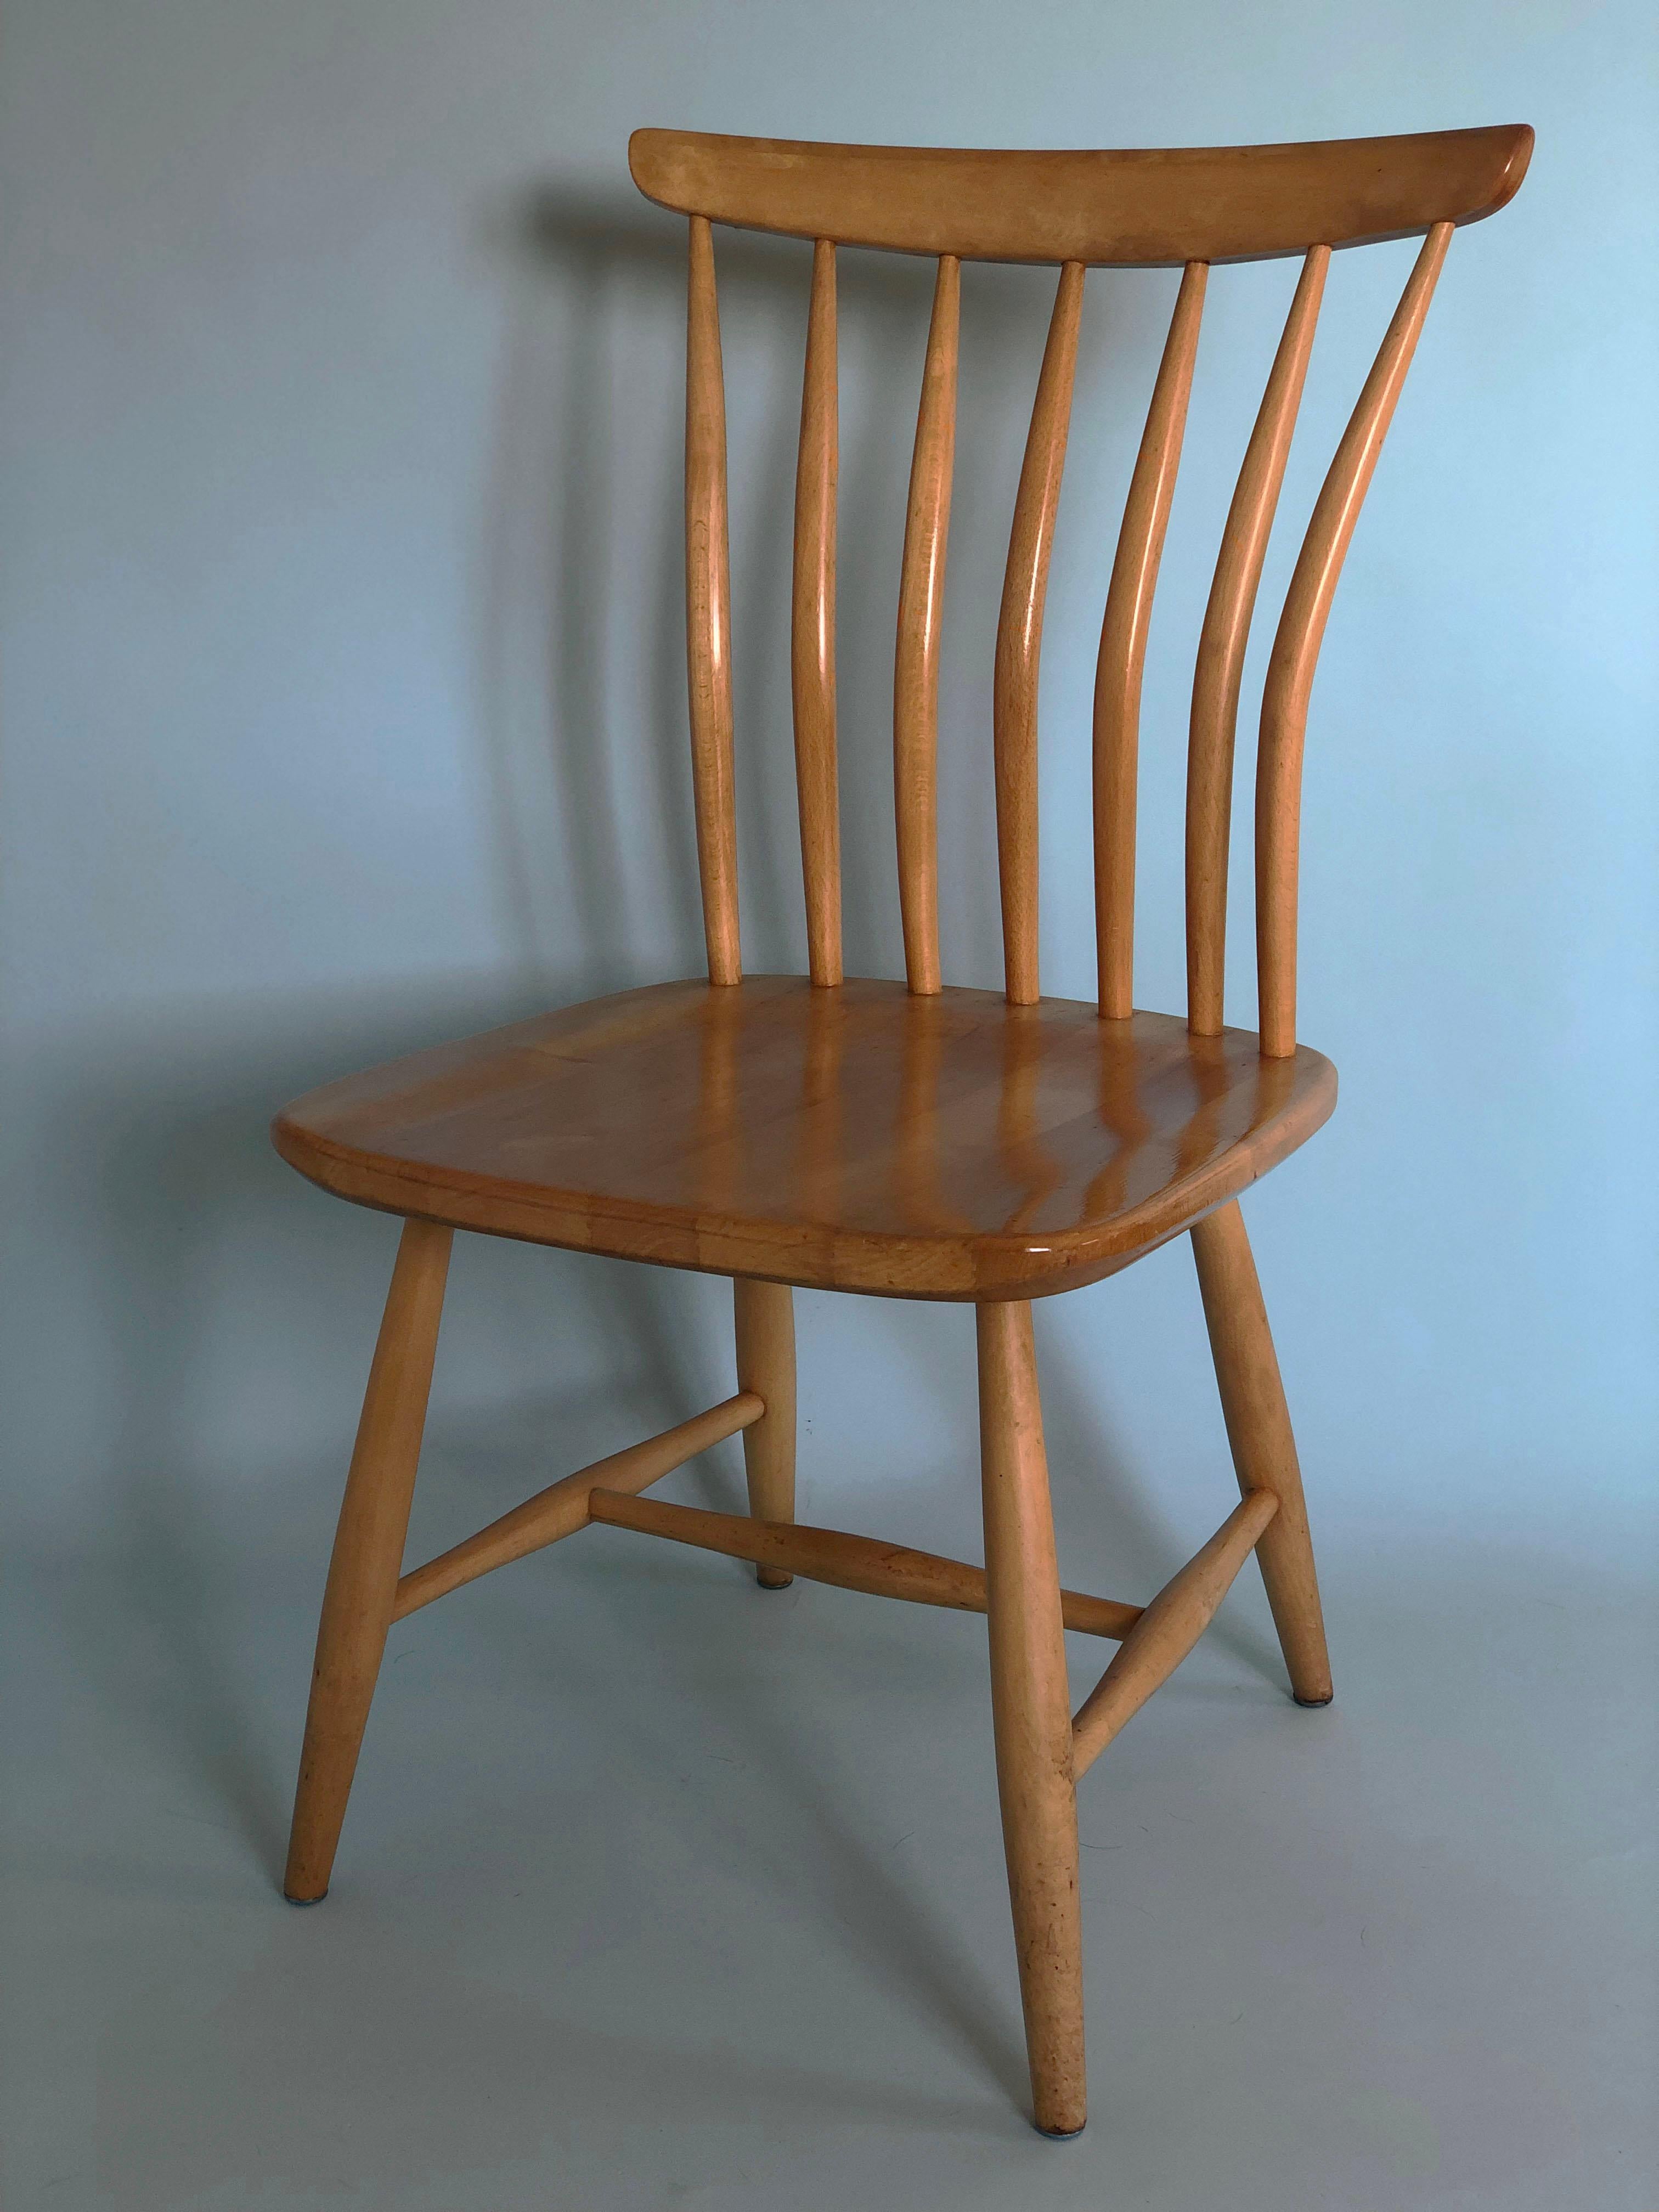 Chaises de salle à manger au design scandinave du milieu du siècle, en provenance de Suède. Bengt Akerblom pour les chaises Akerblom 1950. L'assise et le dossier sont façonnés pour une bonne position assise. Chaque chaise est munie d'une plaque de